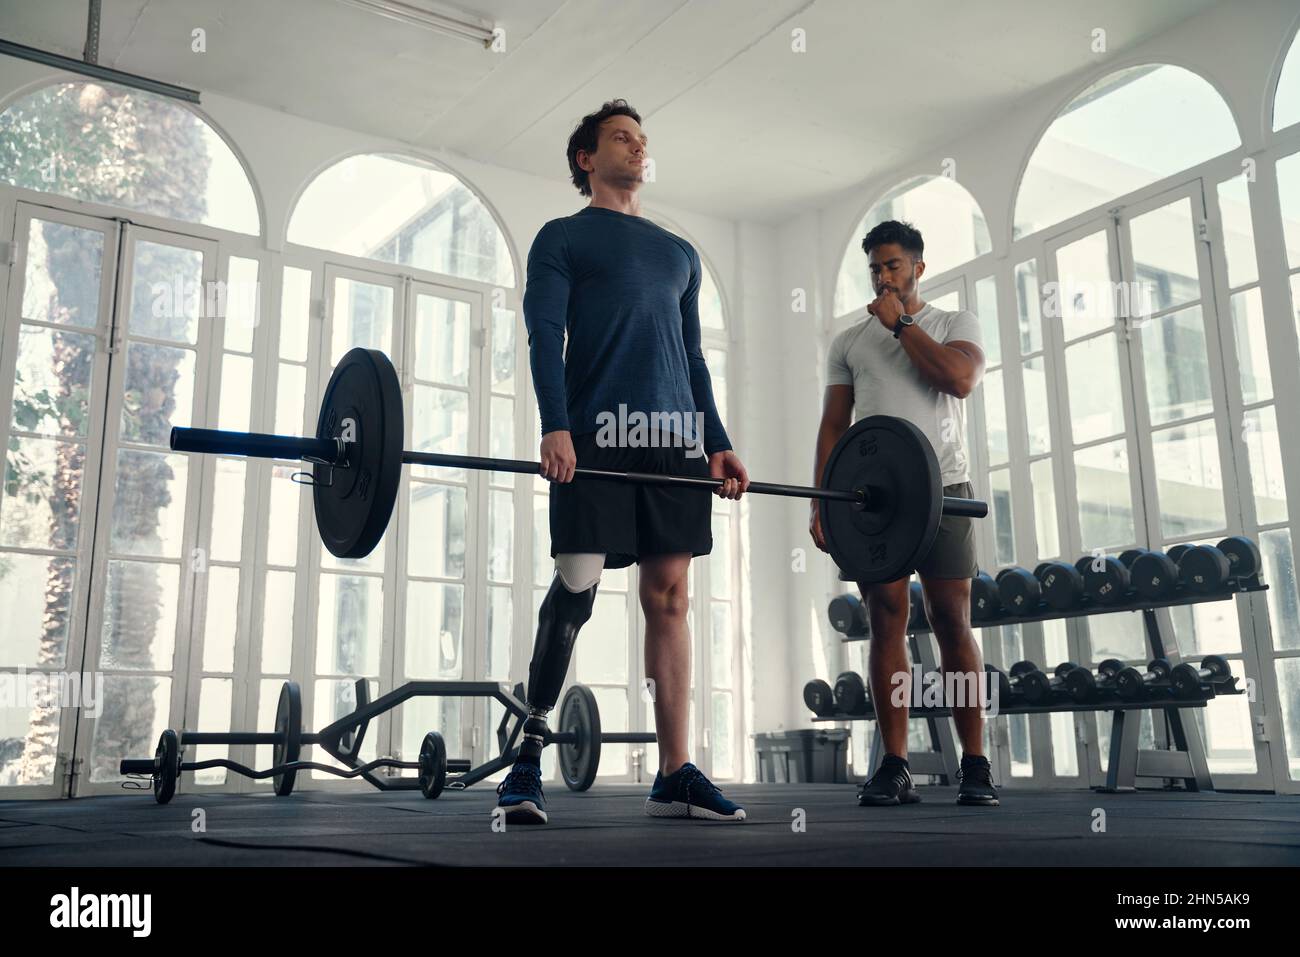 Paralympics-Athlet Gewichtheben mit seinem Trainer im Fitnessstudio. Mann mit Beinprothese, der von seinem Instruktor gecoacht wird Stockfoto